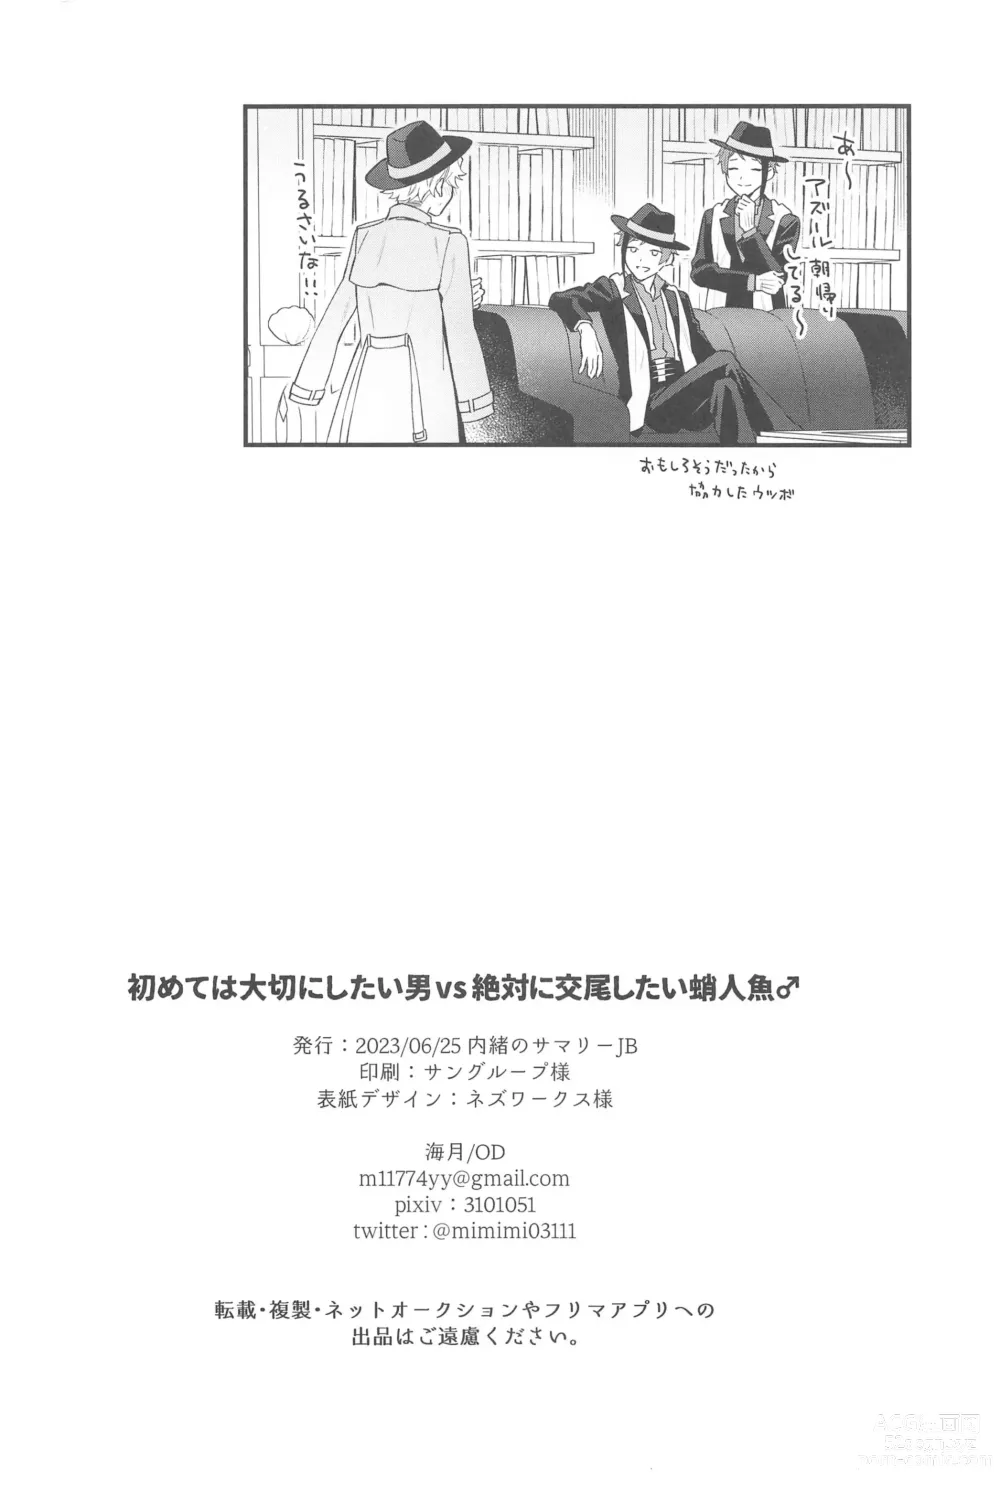 Page 29 of doujinshi Hajimete wa Taisetsu ni  Shitai Otoko VS Zettai ni Koubi Shitai Takoningyo♂